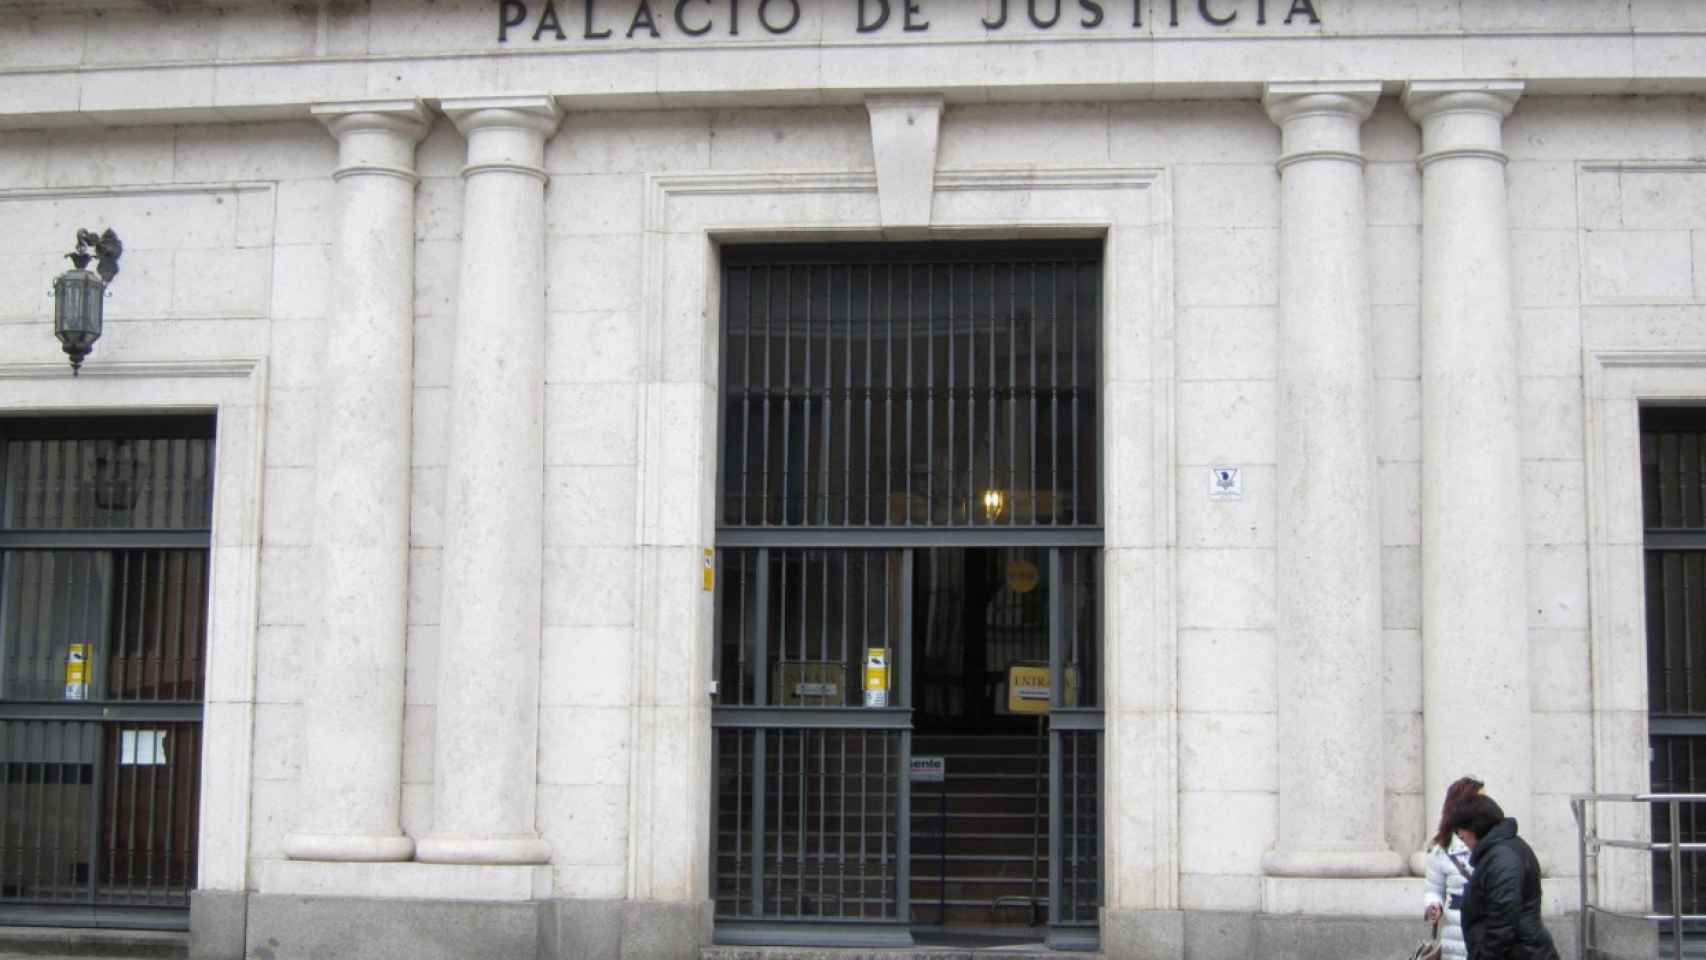 Palacio de Justicia, sede de la Audiencia de Valladolid. - AUDIENCIA DE VALLADOLID. - Archivo